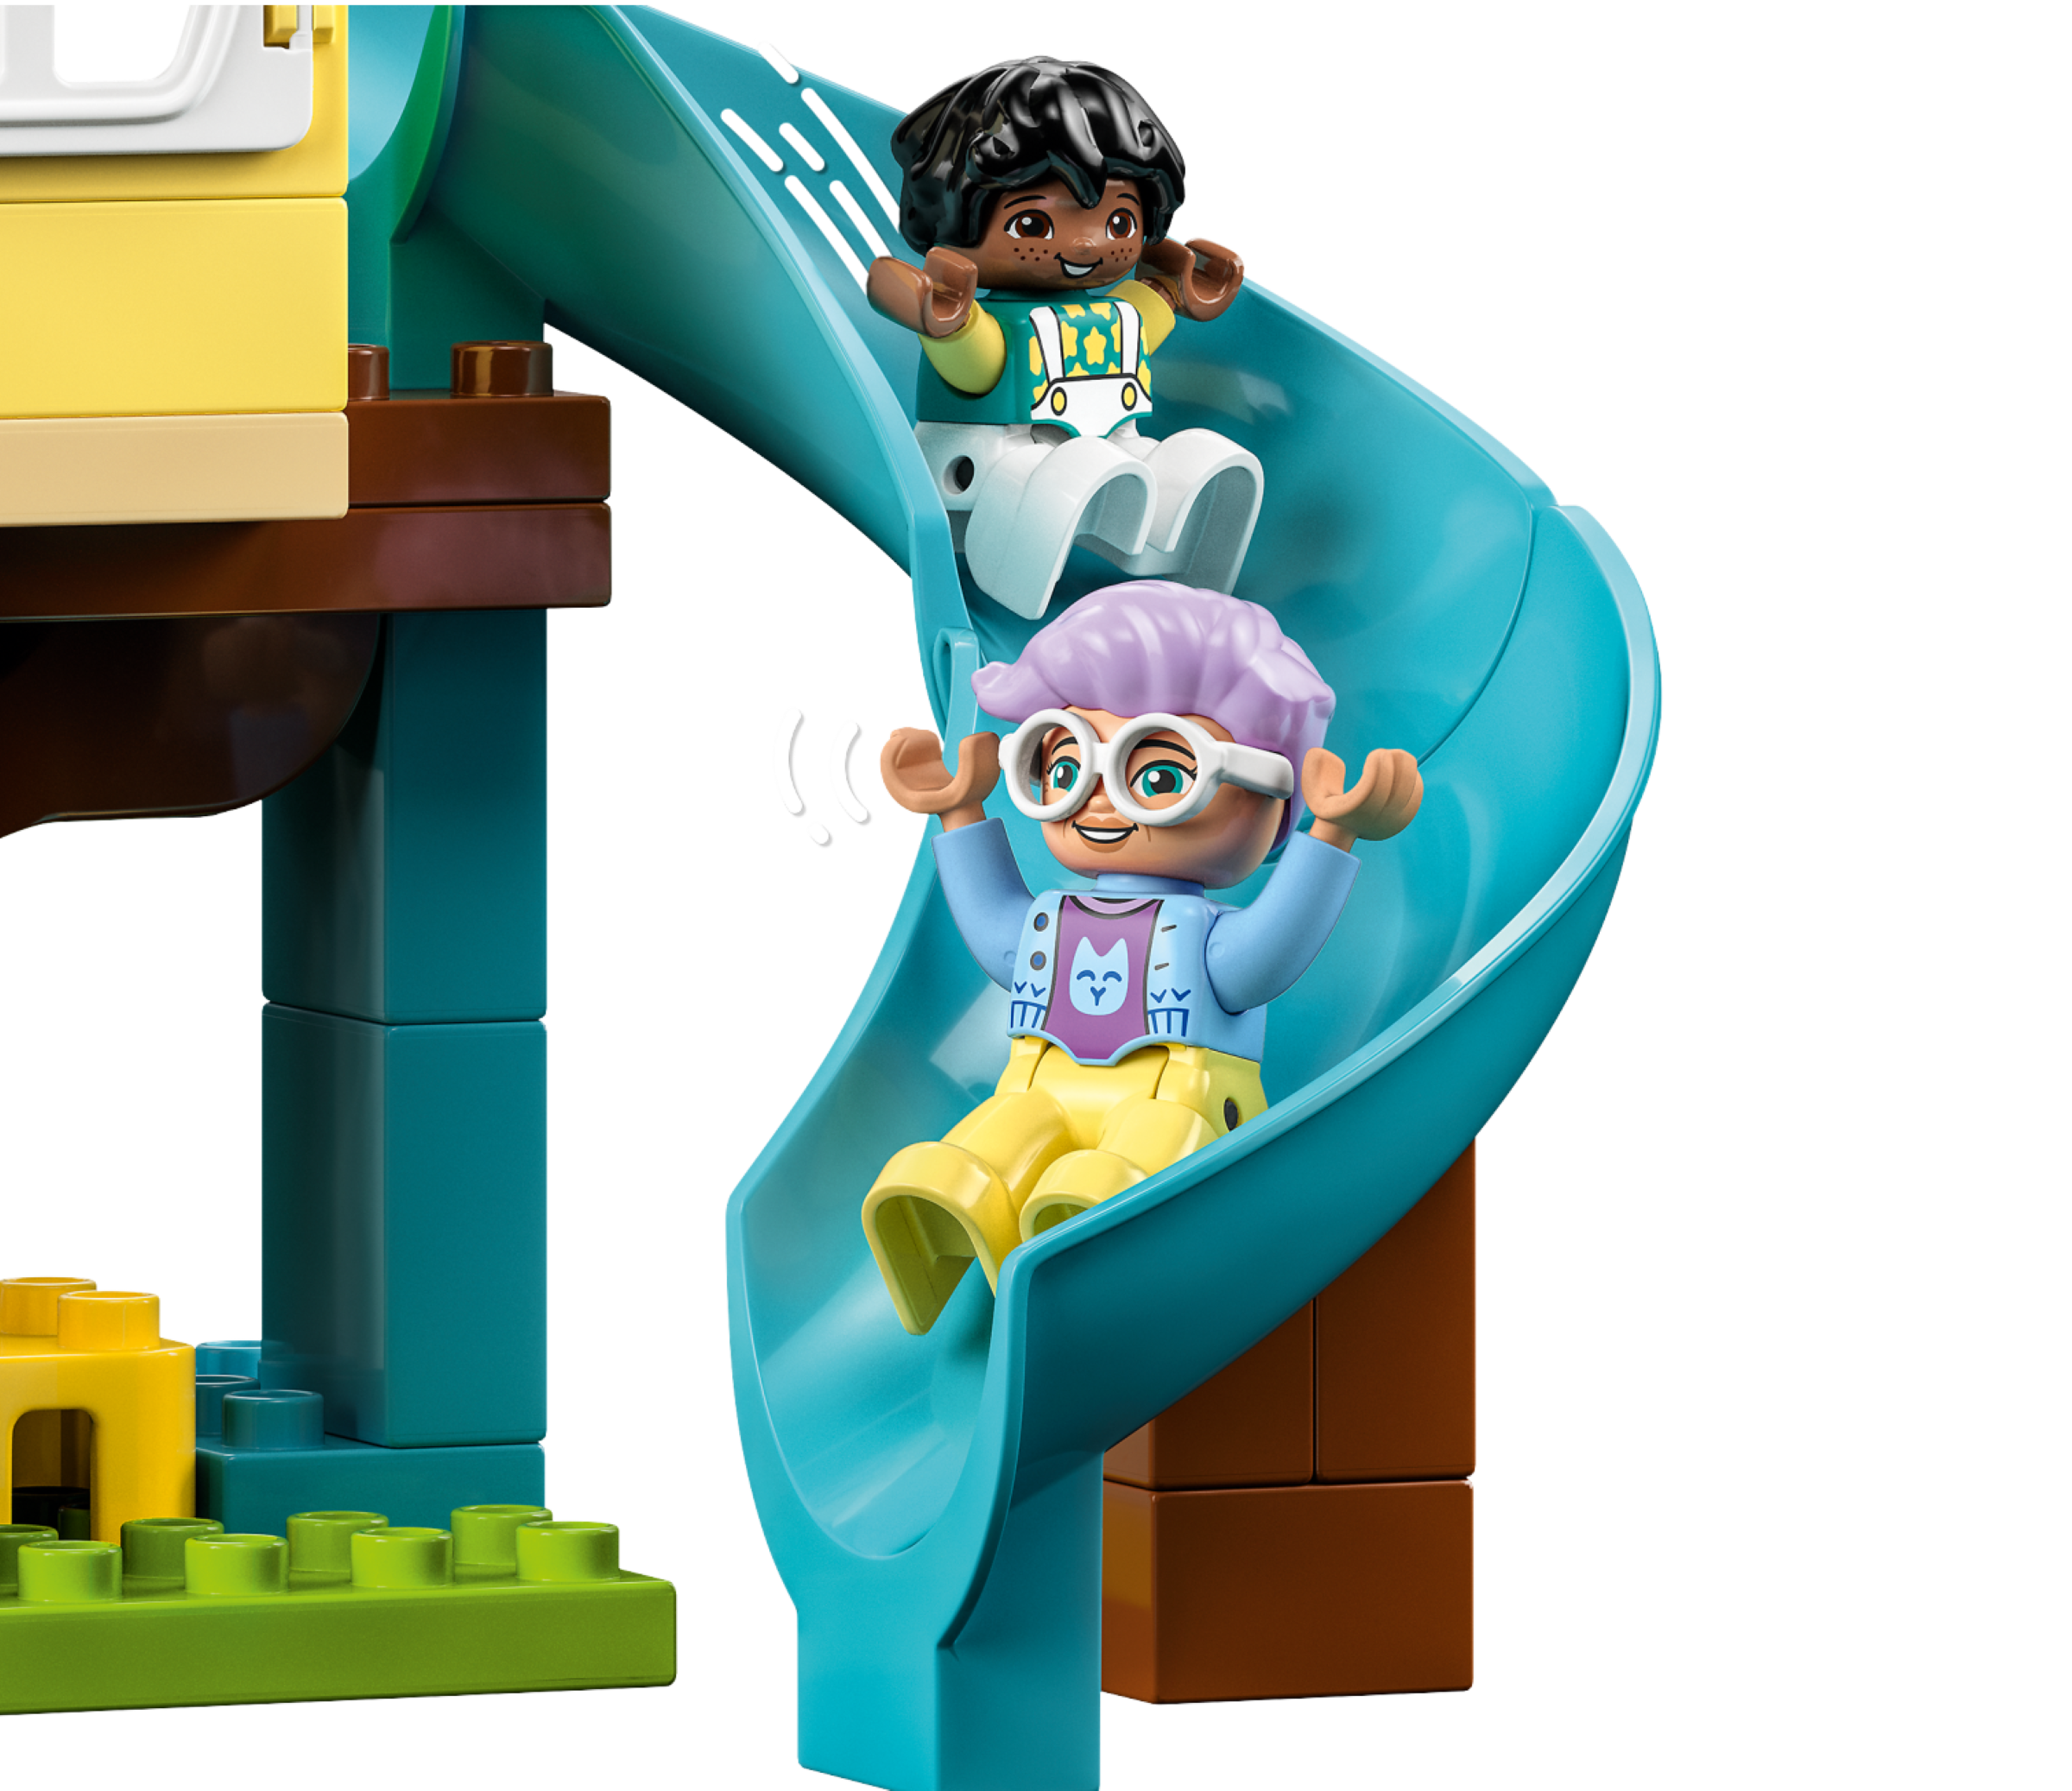 LEGO DUPLO 10993 - Juguete creativo de construcción 3 en 1 para niños  pequeños, incluye 8 figuras para enseñar habilidades sociales, jugar juntos  y